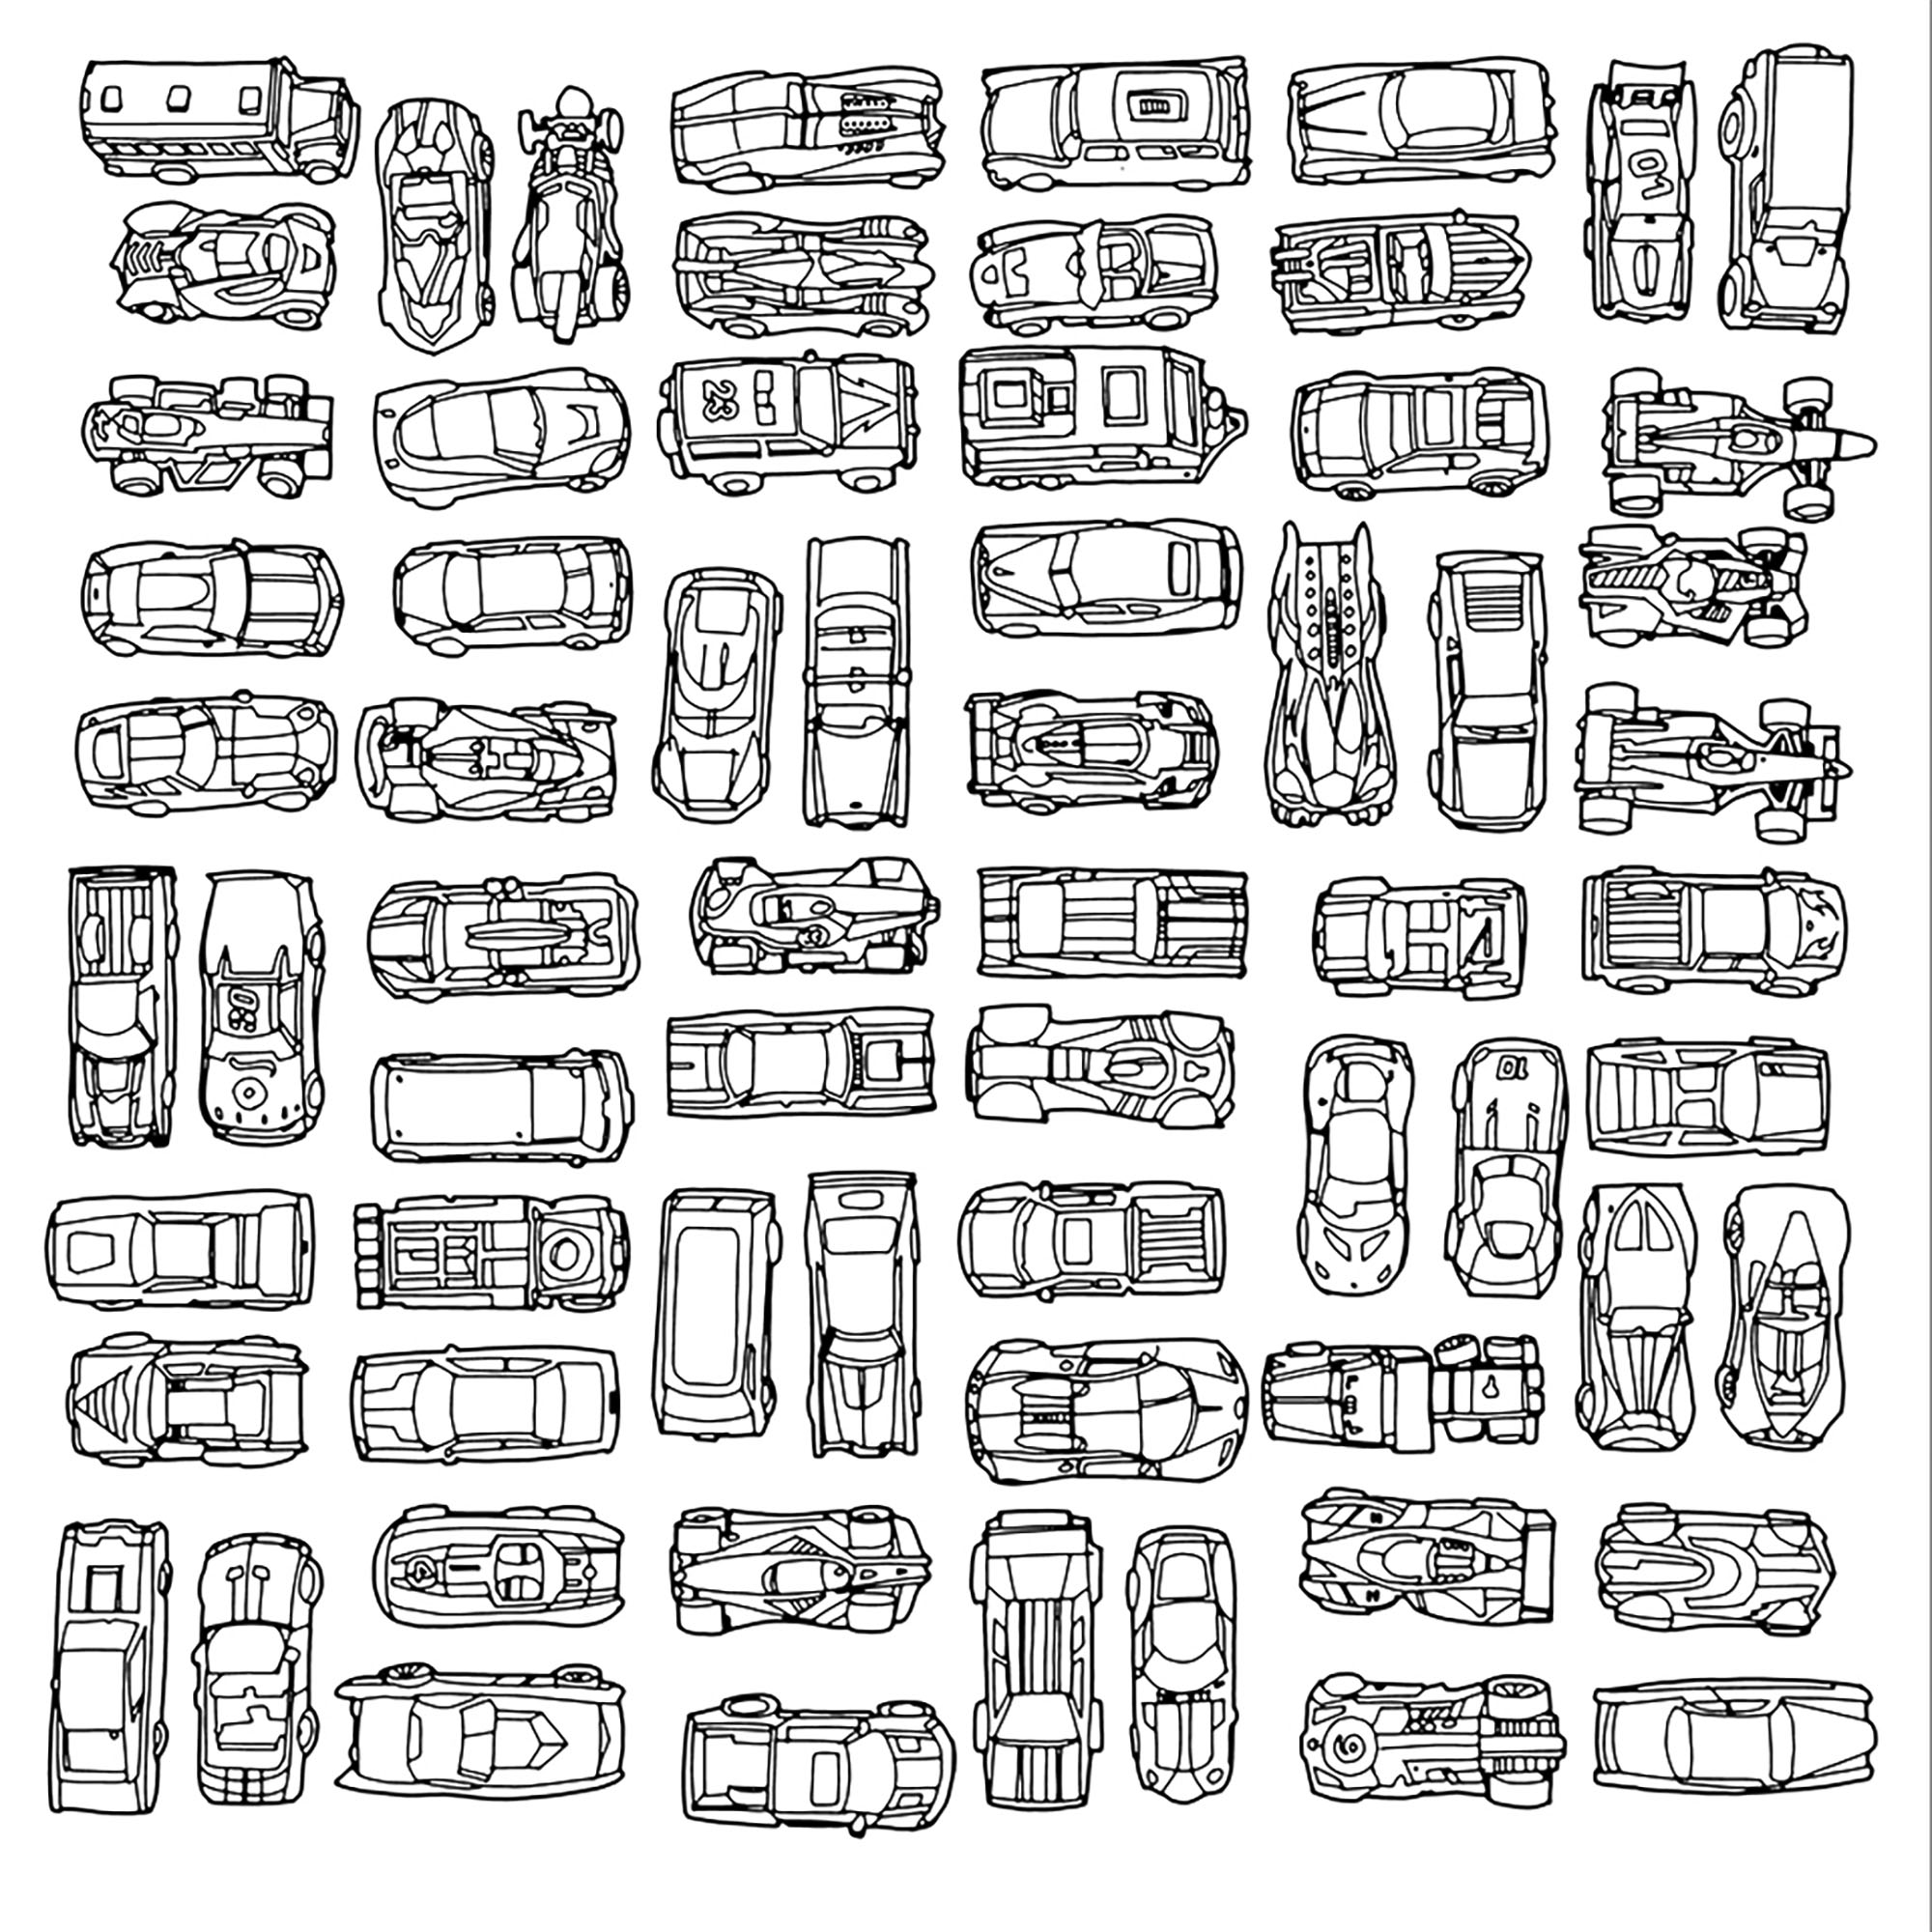 Sammlung verschiedener Modelle von Kleinwagen, Künstler : Steve Mc. Donald